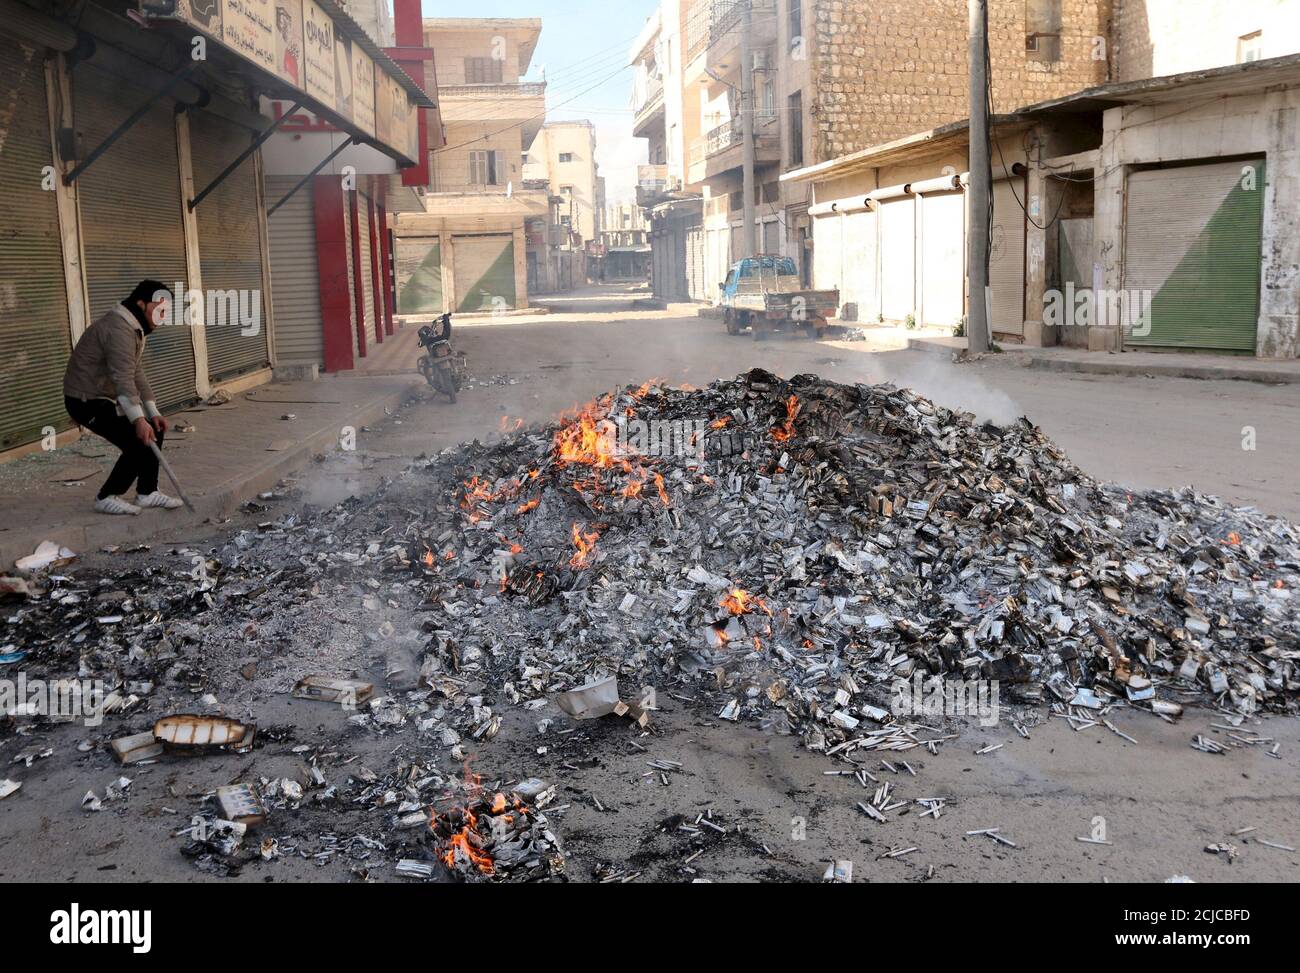 Un uomo si trova vicino alle sigarette confiscate, incendiate dai membri del fronte Nusra di al Qaeda nella città di Idlib il 31 marzo 2015. Gruppi islamici, tra cui il fronte Nusra di al Qaeda, hanno sequestrato la città di Idlib per la prima volta nella guerra civile in Siria, combattenti e un gruppo di monitoraggio ha detto sabato. Foto scattata il 31 marzo 2015. REUTERS/Ammar Abdullah Foto Stock